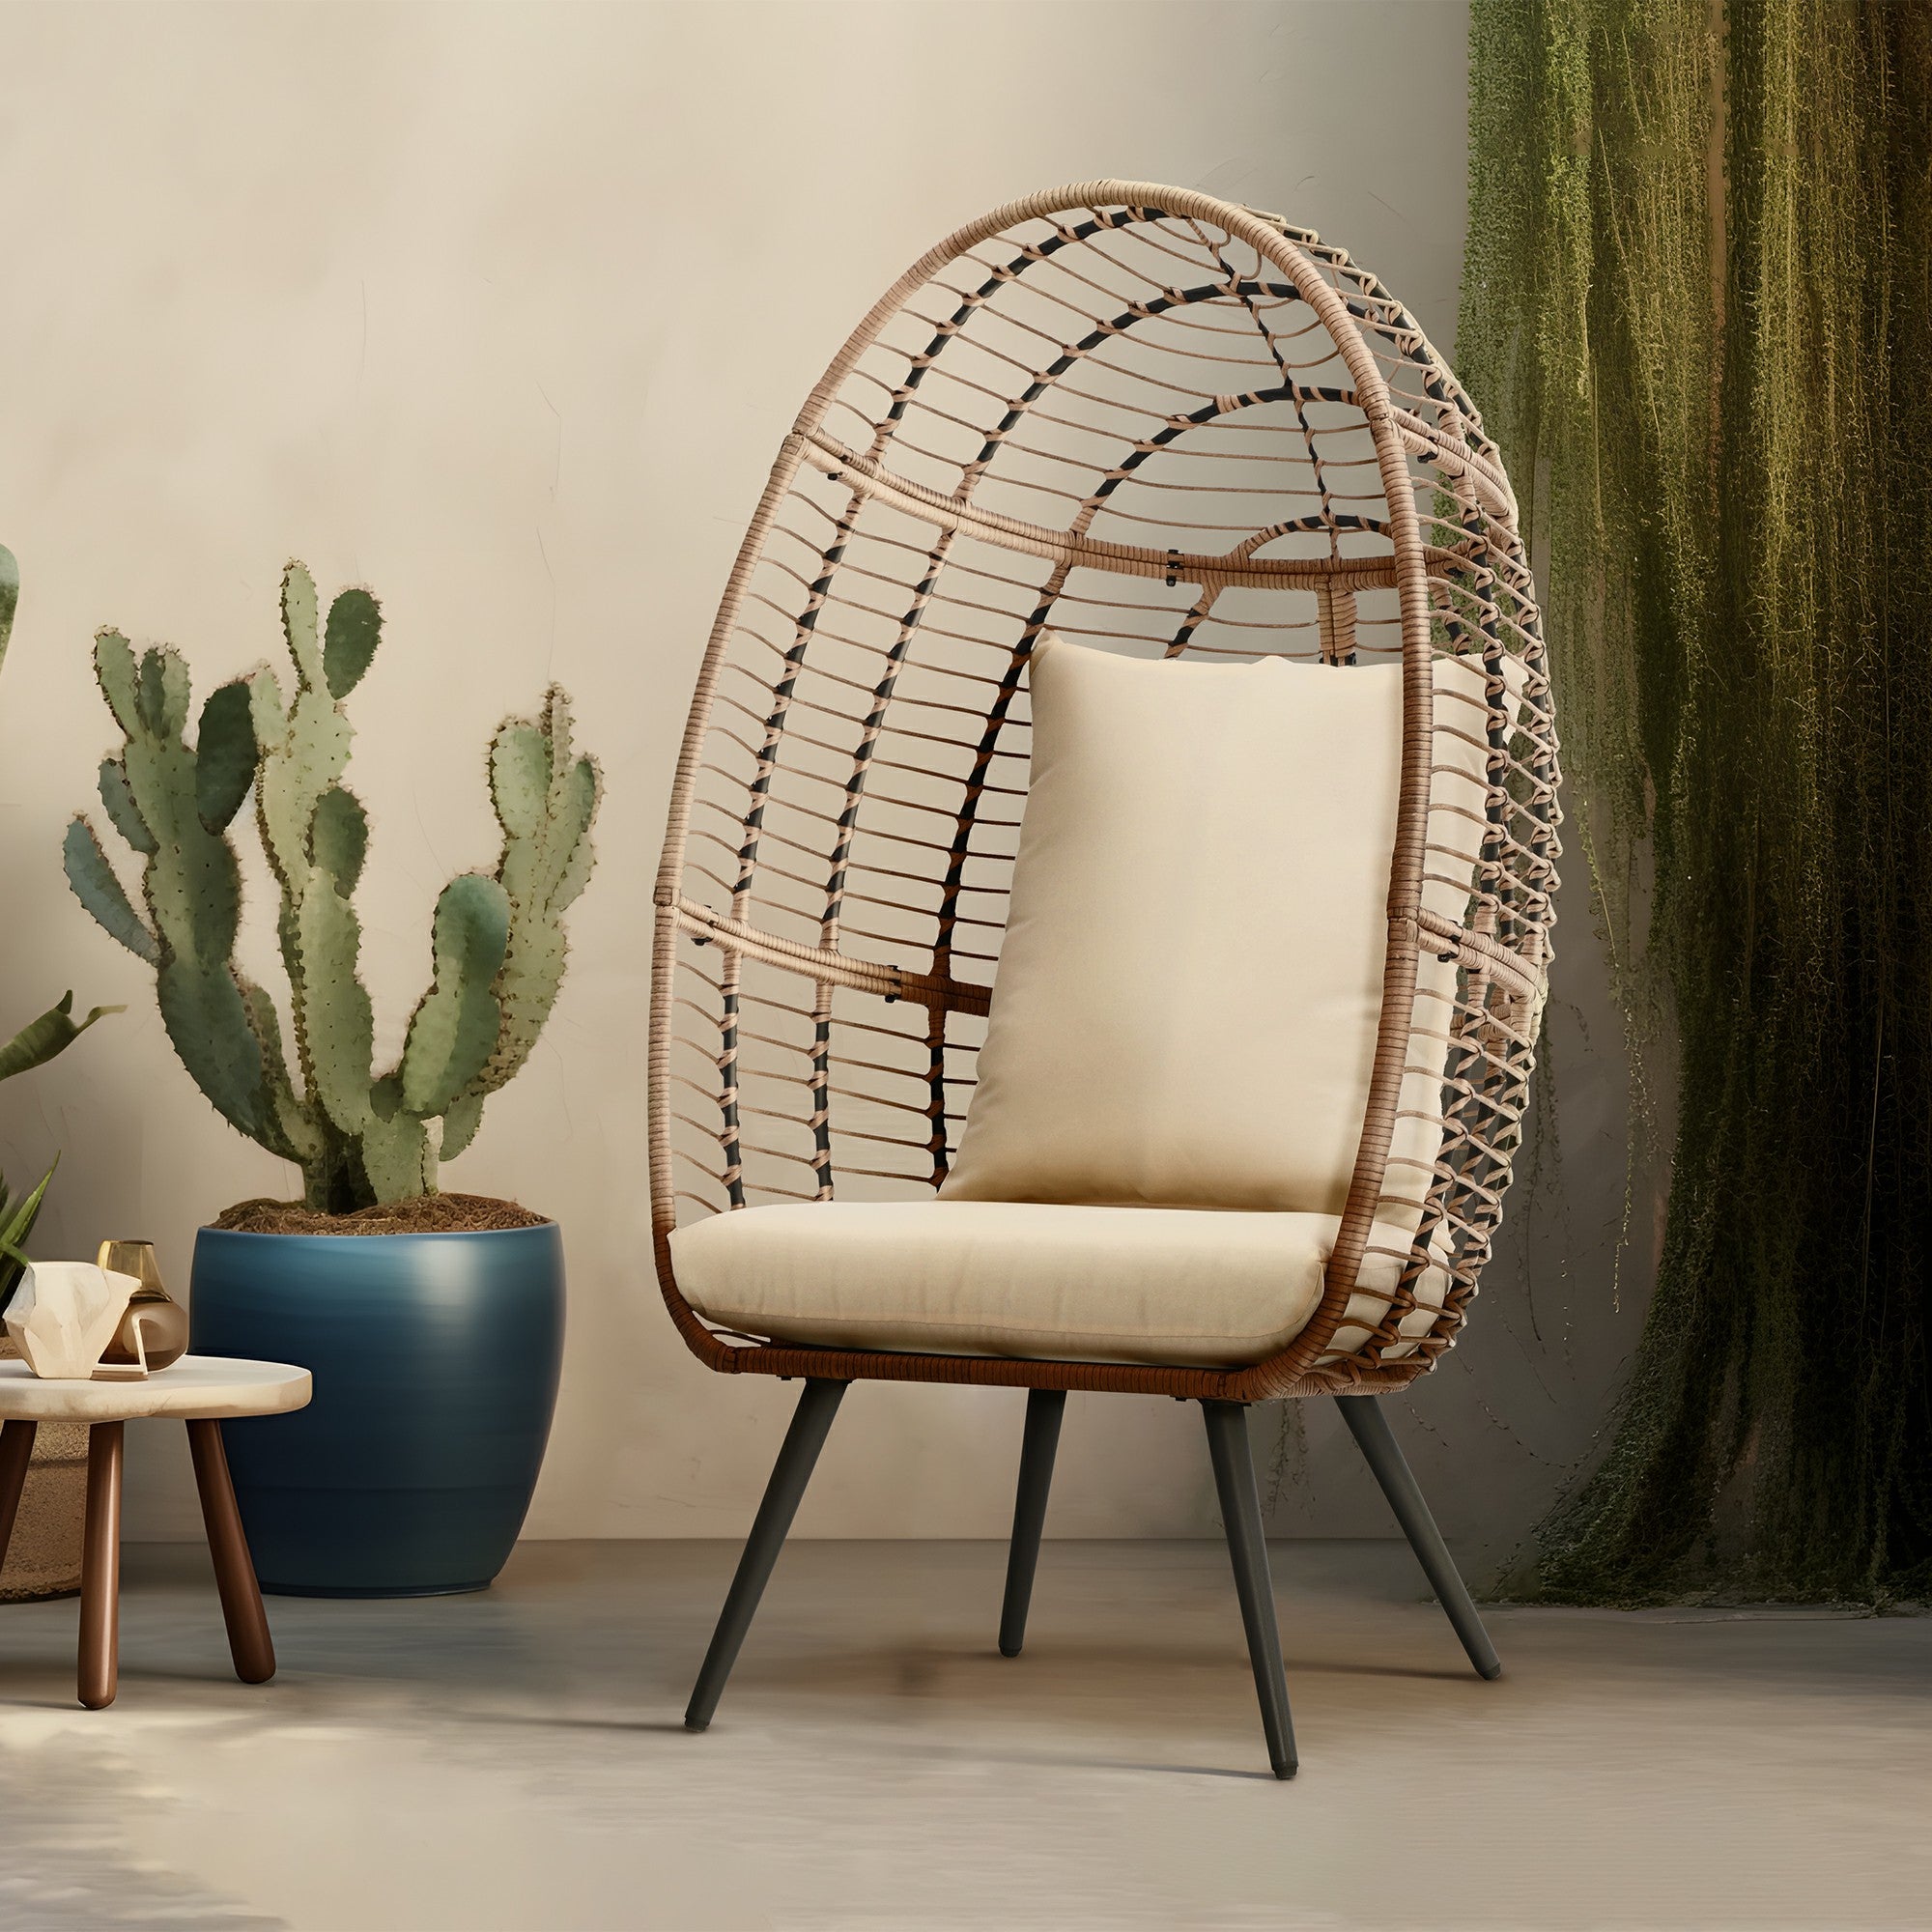 Contemporary & Modern Outdoor Furniture - Jardina